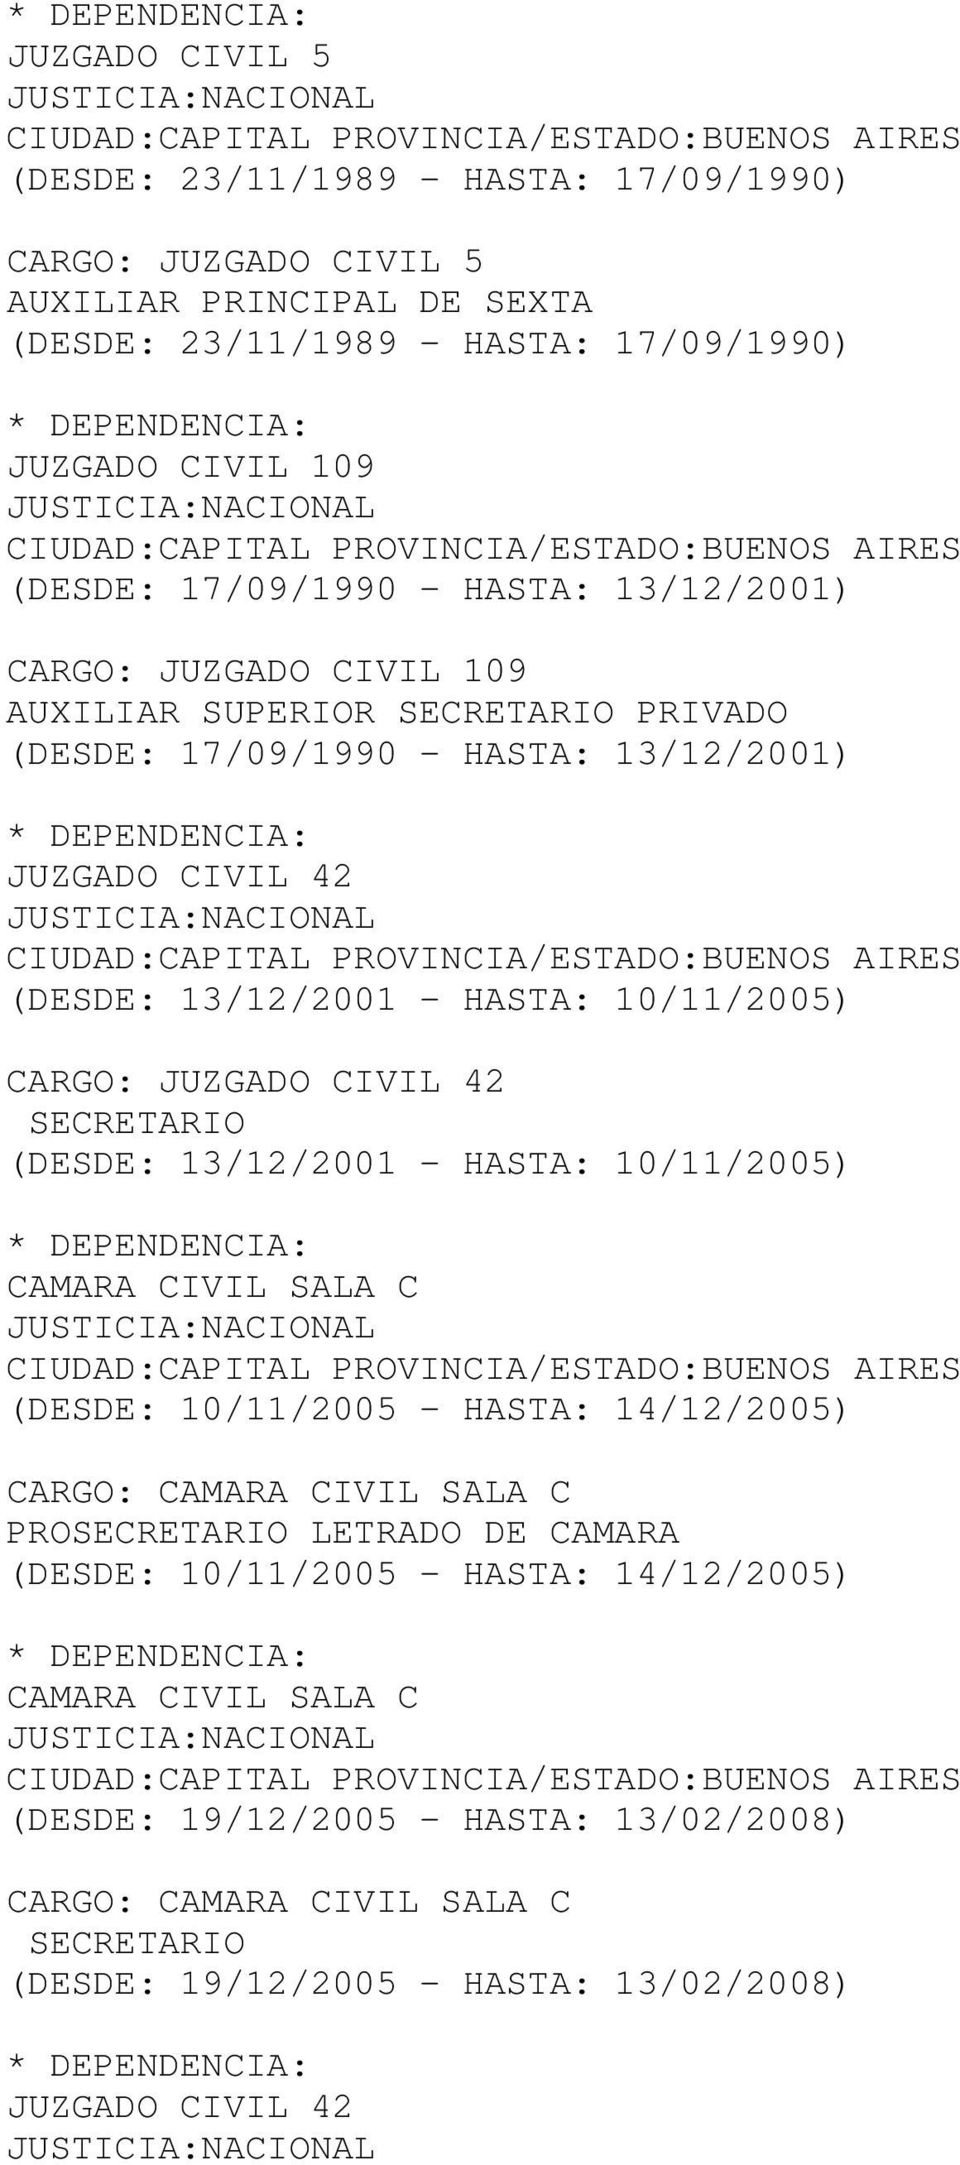 JUZGADO CIVIL 42 SECRETARIO (DESDE: 13/12/2001 - HASTA: 10/11/2005) CAMARA CIVIL SALA C (DESDE: 10/11/2005 - HASTA: 14/12/2005) CARGO: CAMARA CIVIL SALA C PROSECRETARIO LETRADO DE CAMARA